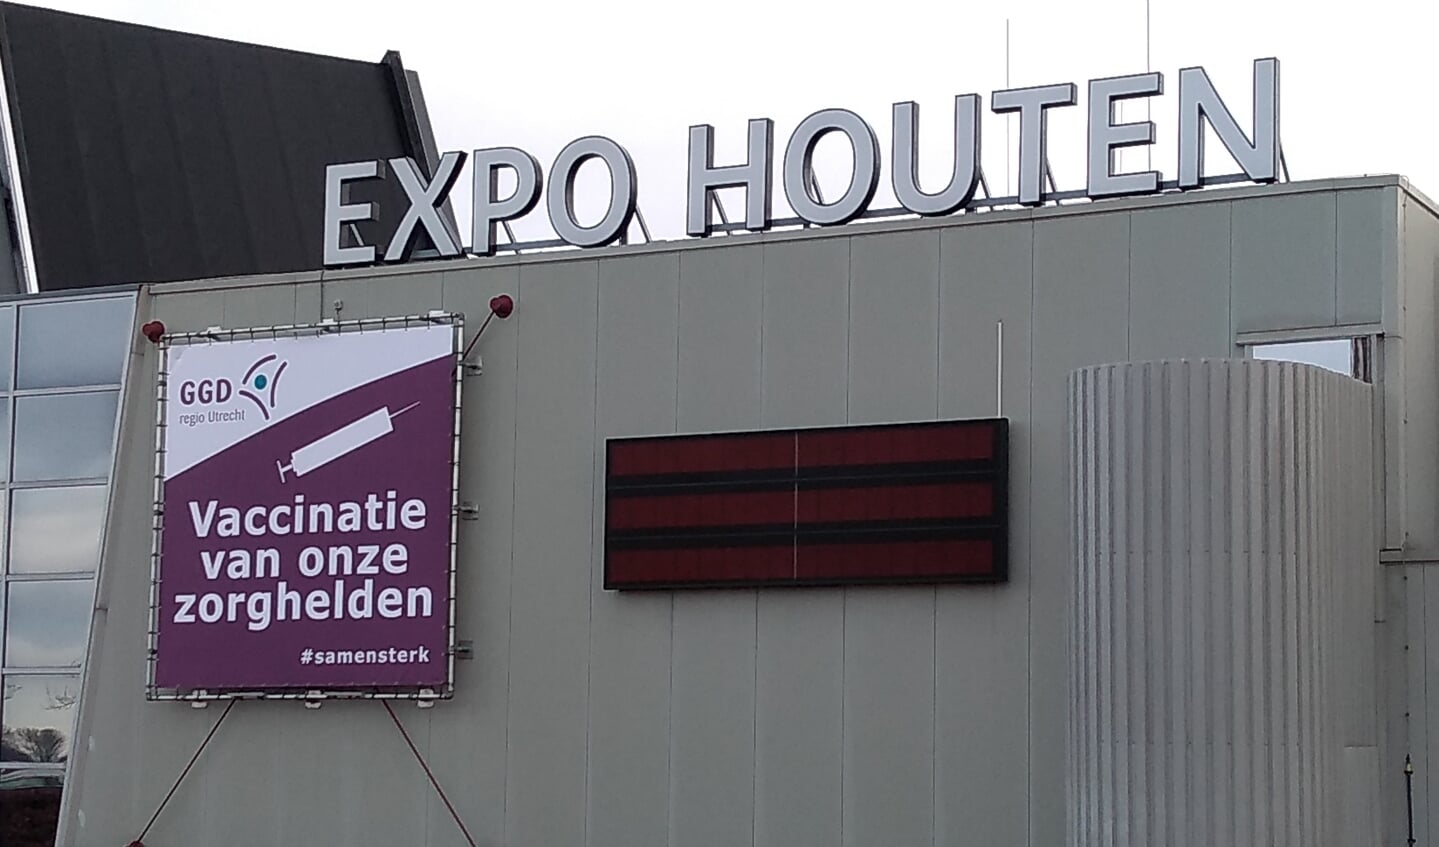 Vanaf 13 januari kan een boosterprik zonder afspraak worden gehaald in de Expo in Houten